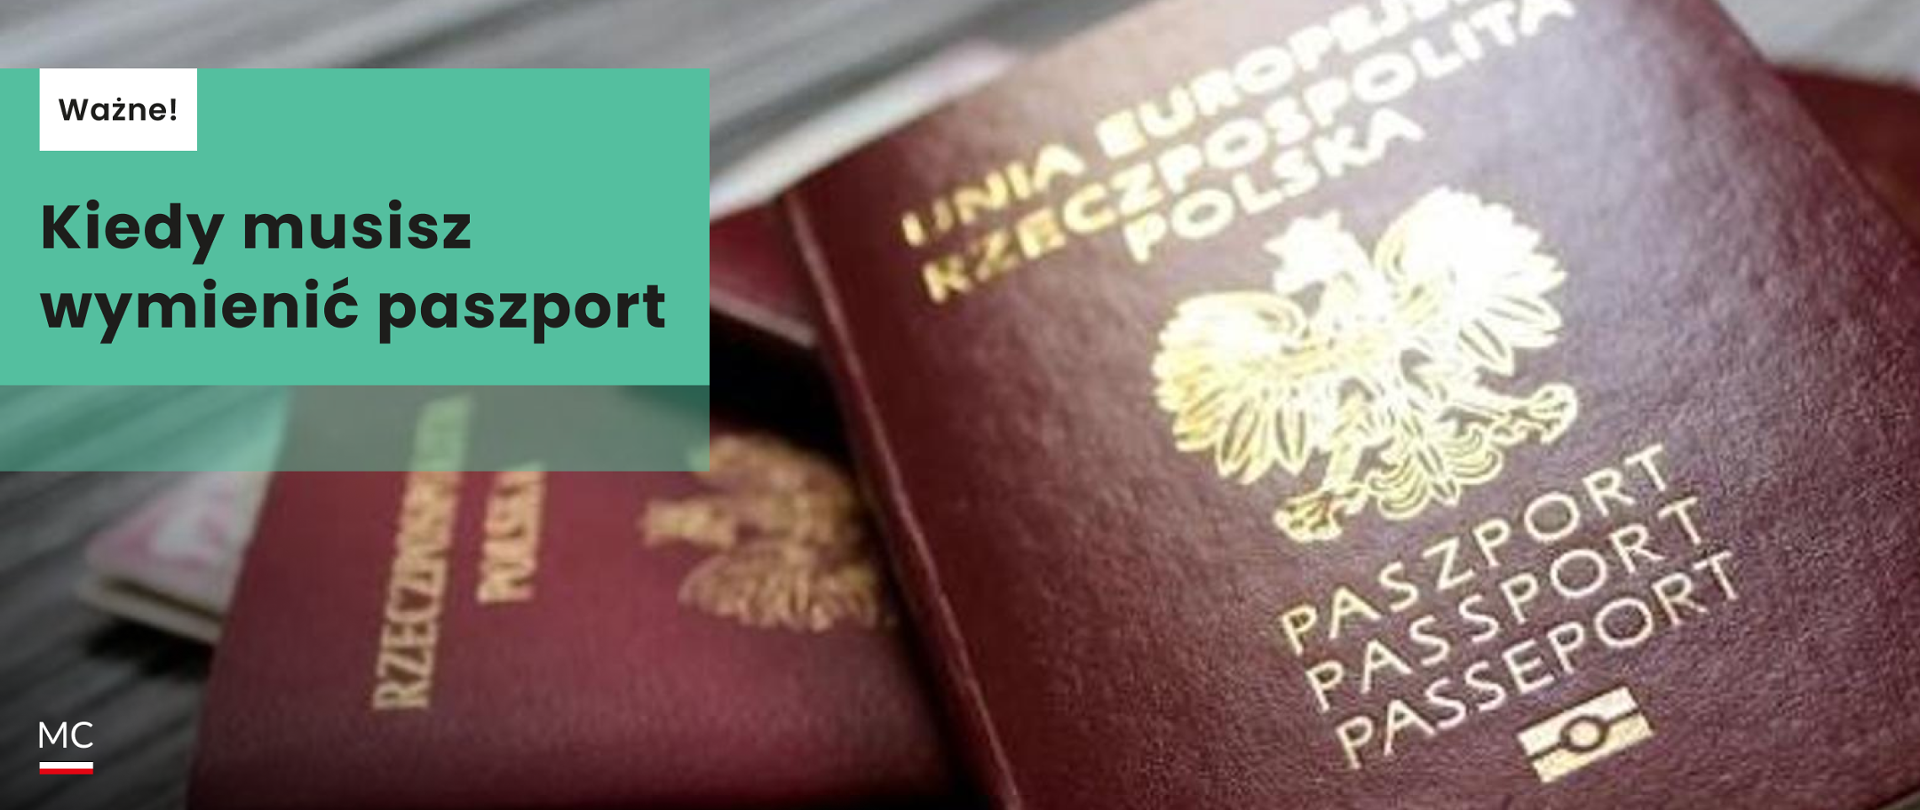 Kiedy_musisz_wymienić_paszport_-_web